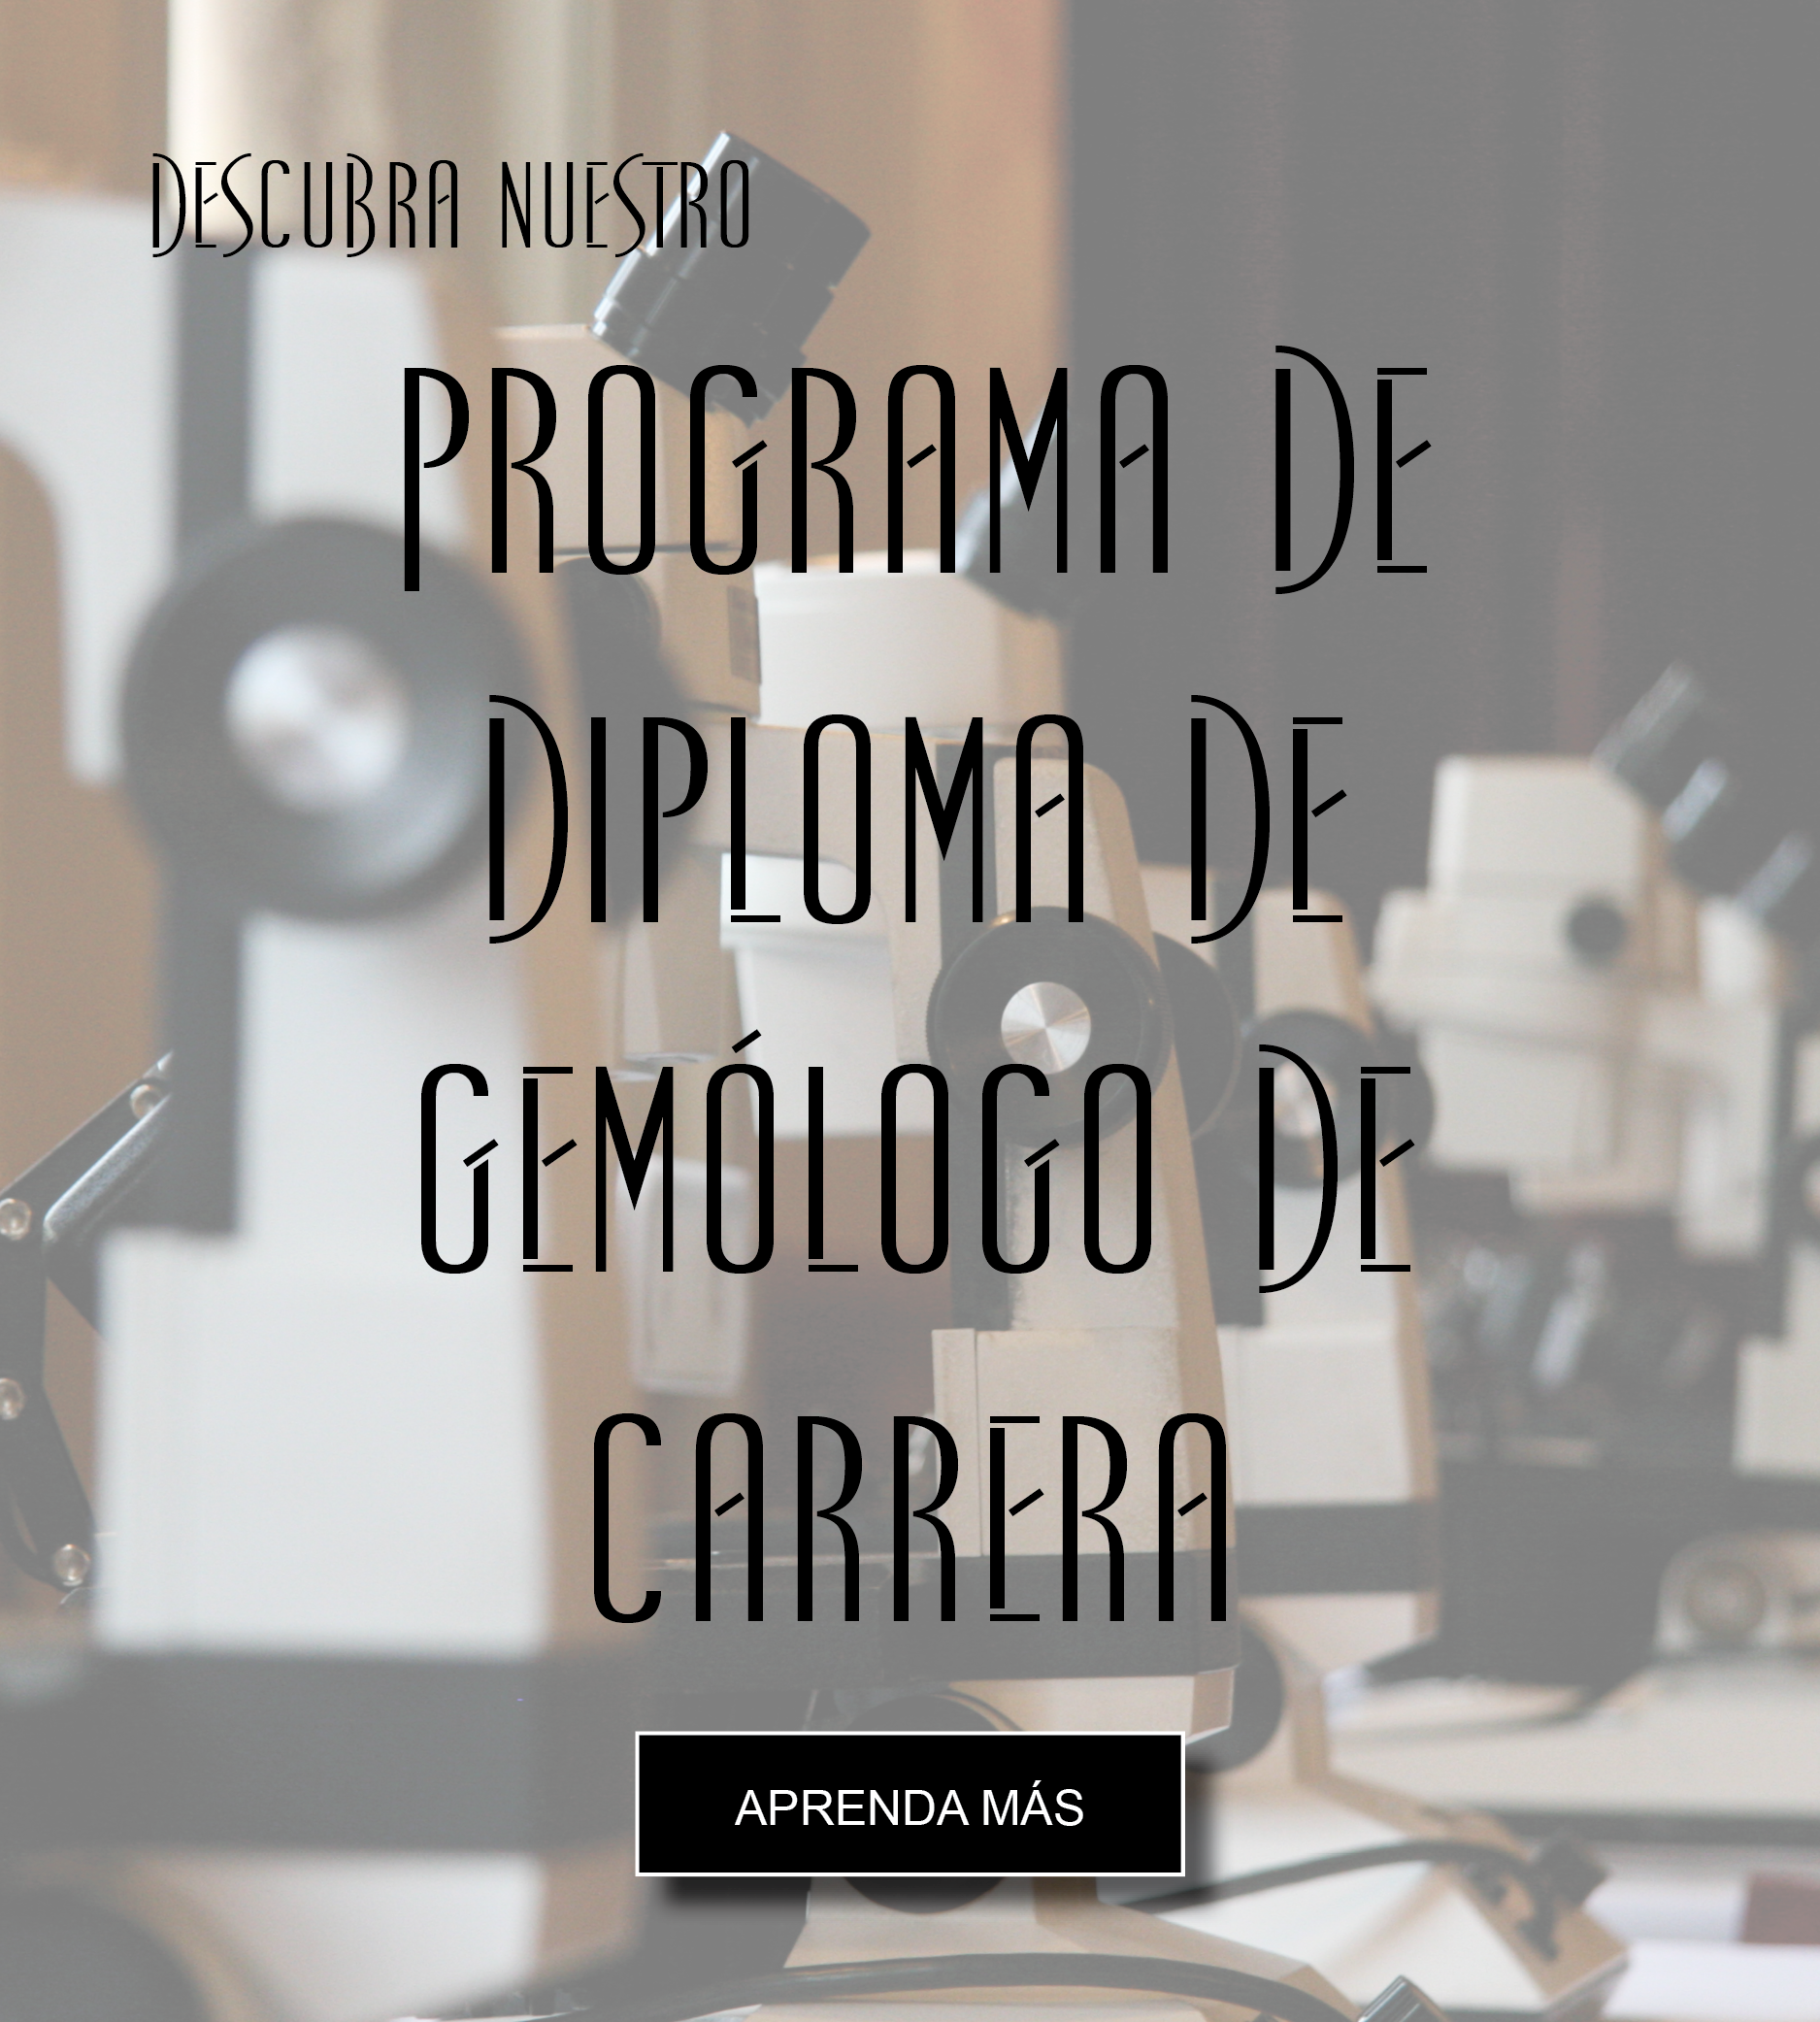 Diploma de Gemologo de Carrera.png